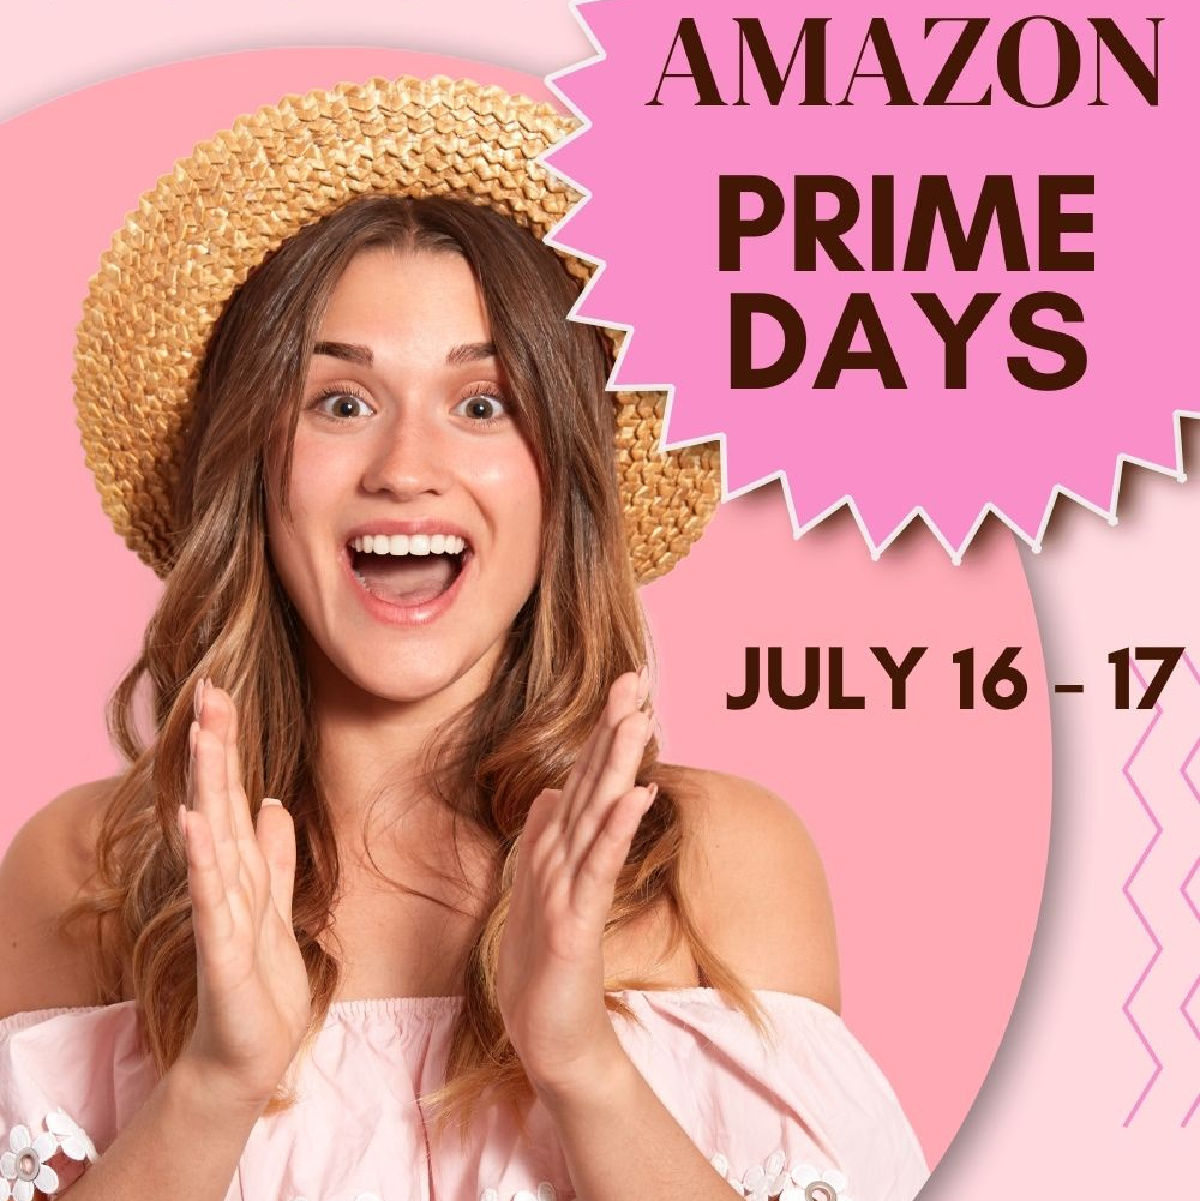 Amazon Prime Days graphic